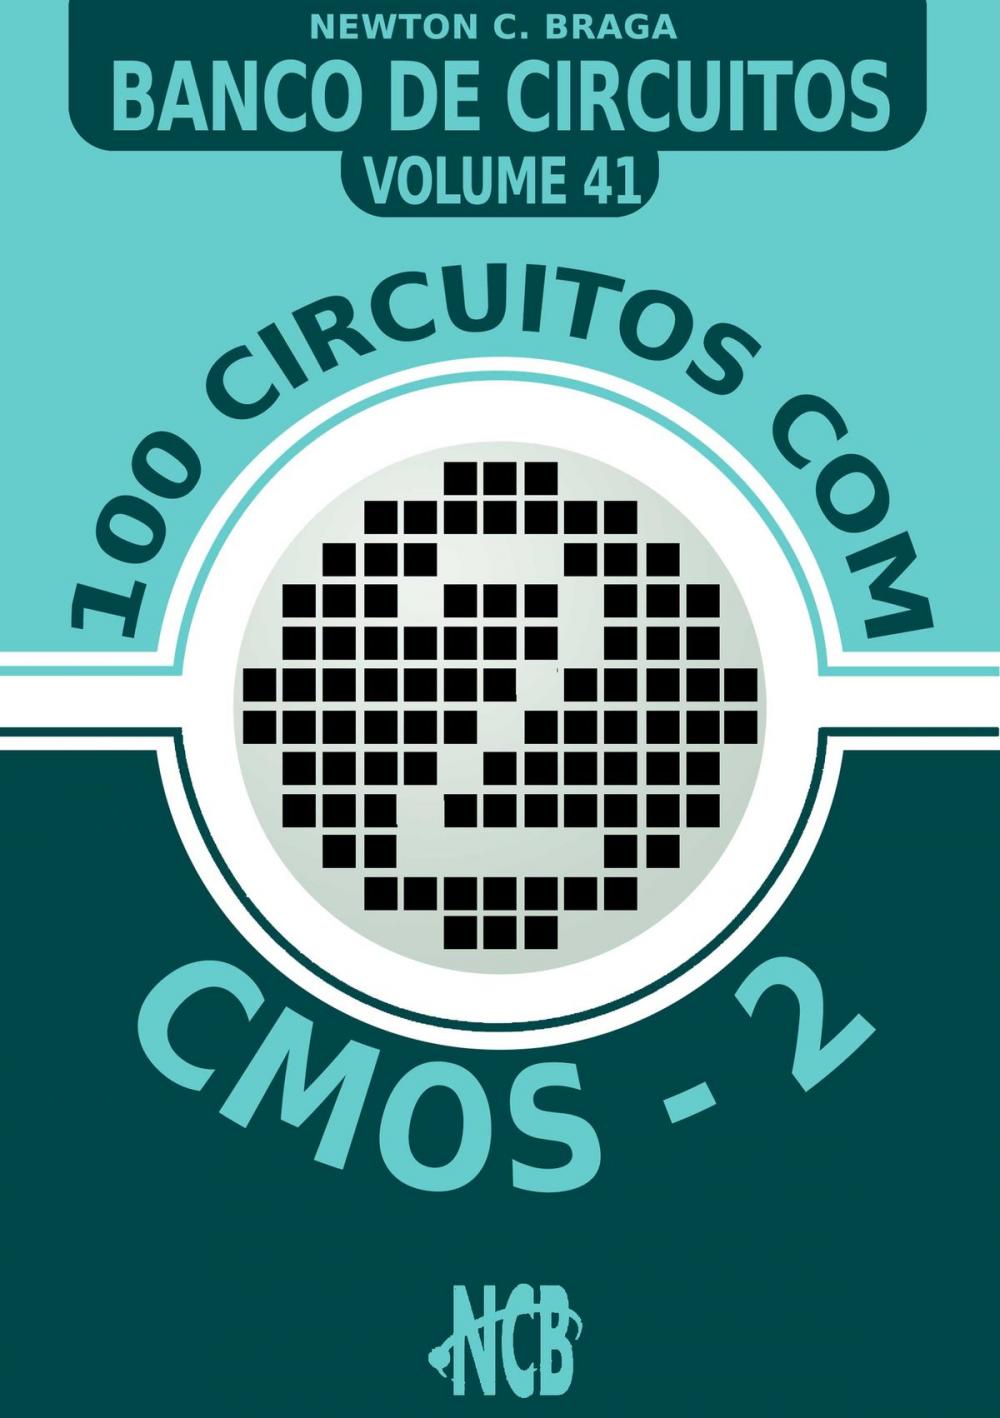 Big bigCover of 100 Circuitos com CMOS e TTLs - 2